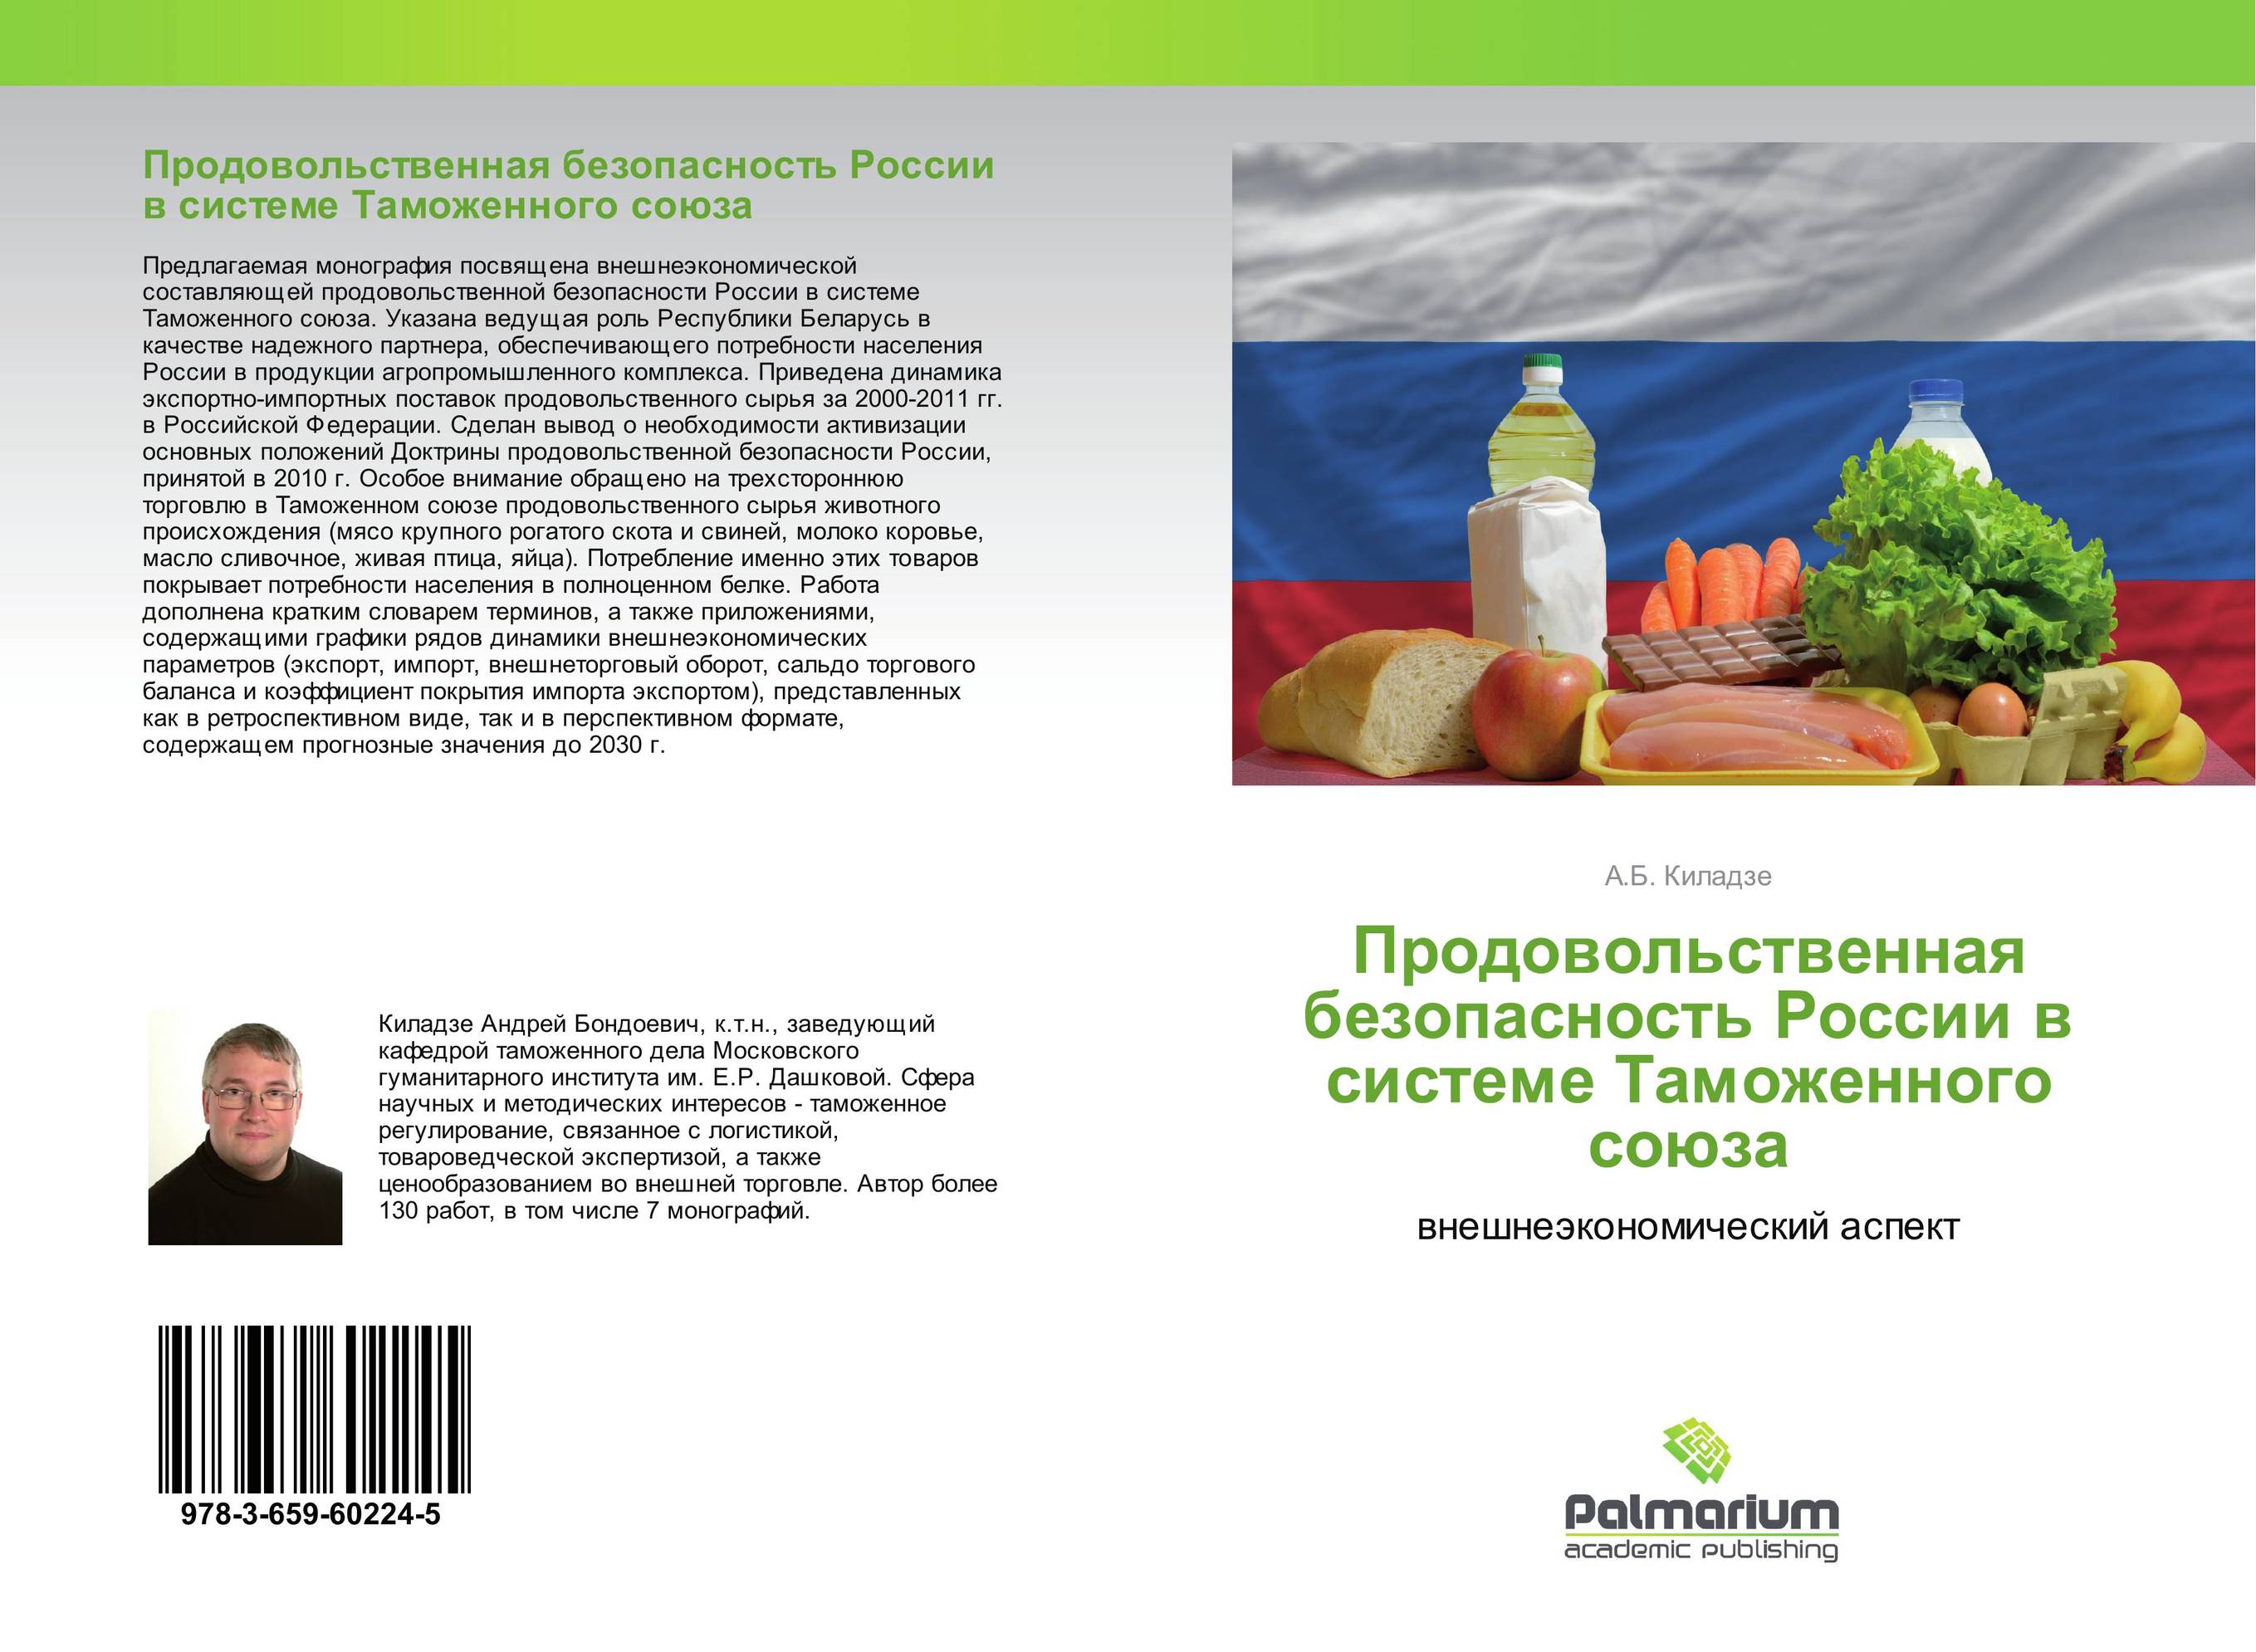 
        Продовольственная безопасность России в системе Таможенного союза. Внешнеэкономический аспект.
      